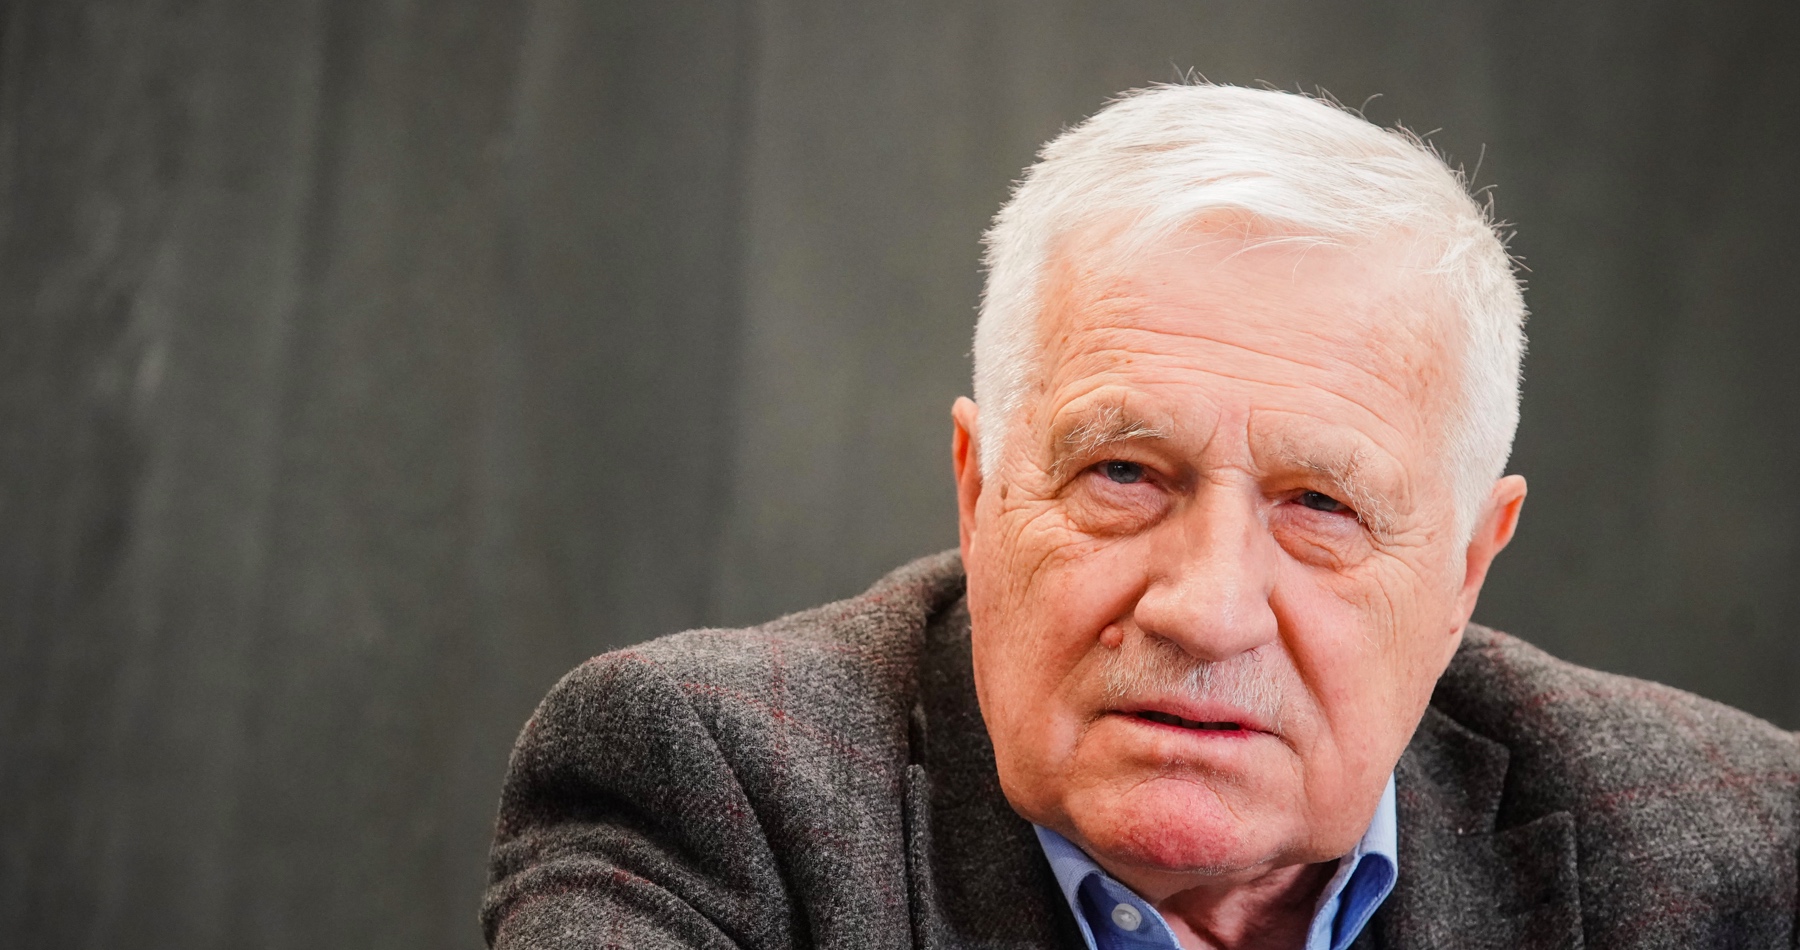 Václav Klaus o verejnej debate ohľadne konfliktu na Ukrajine: „Dnes existující jednosměrná propaganda a podlehnutí takové propagandě jsou cestou do nového poddanství a nesvobody“